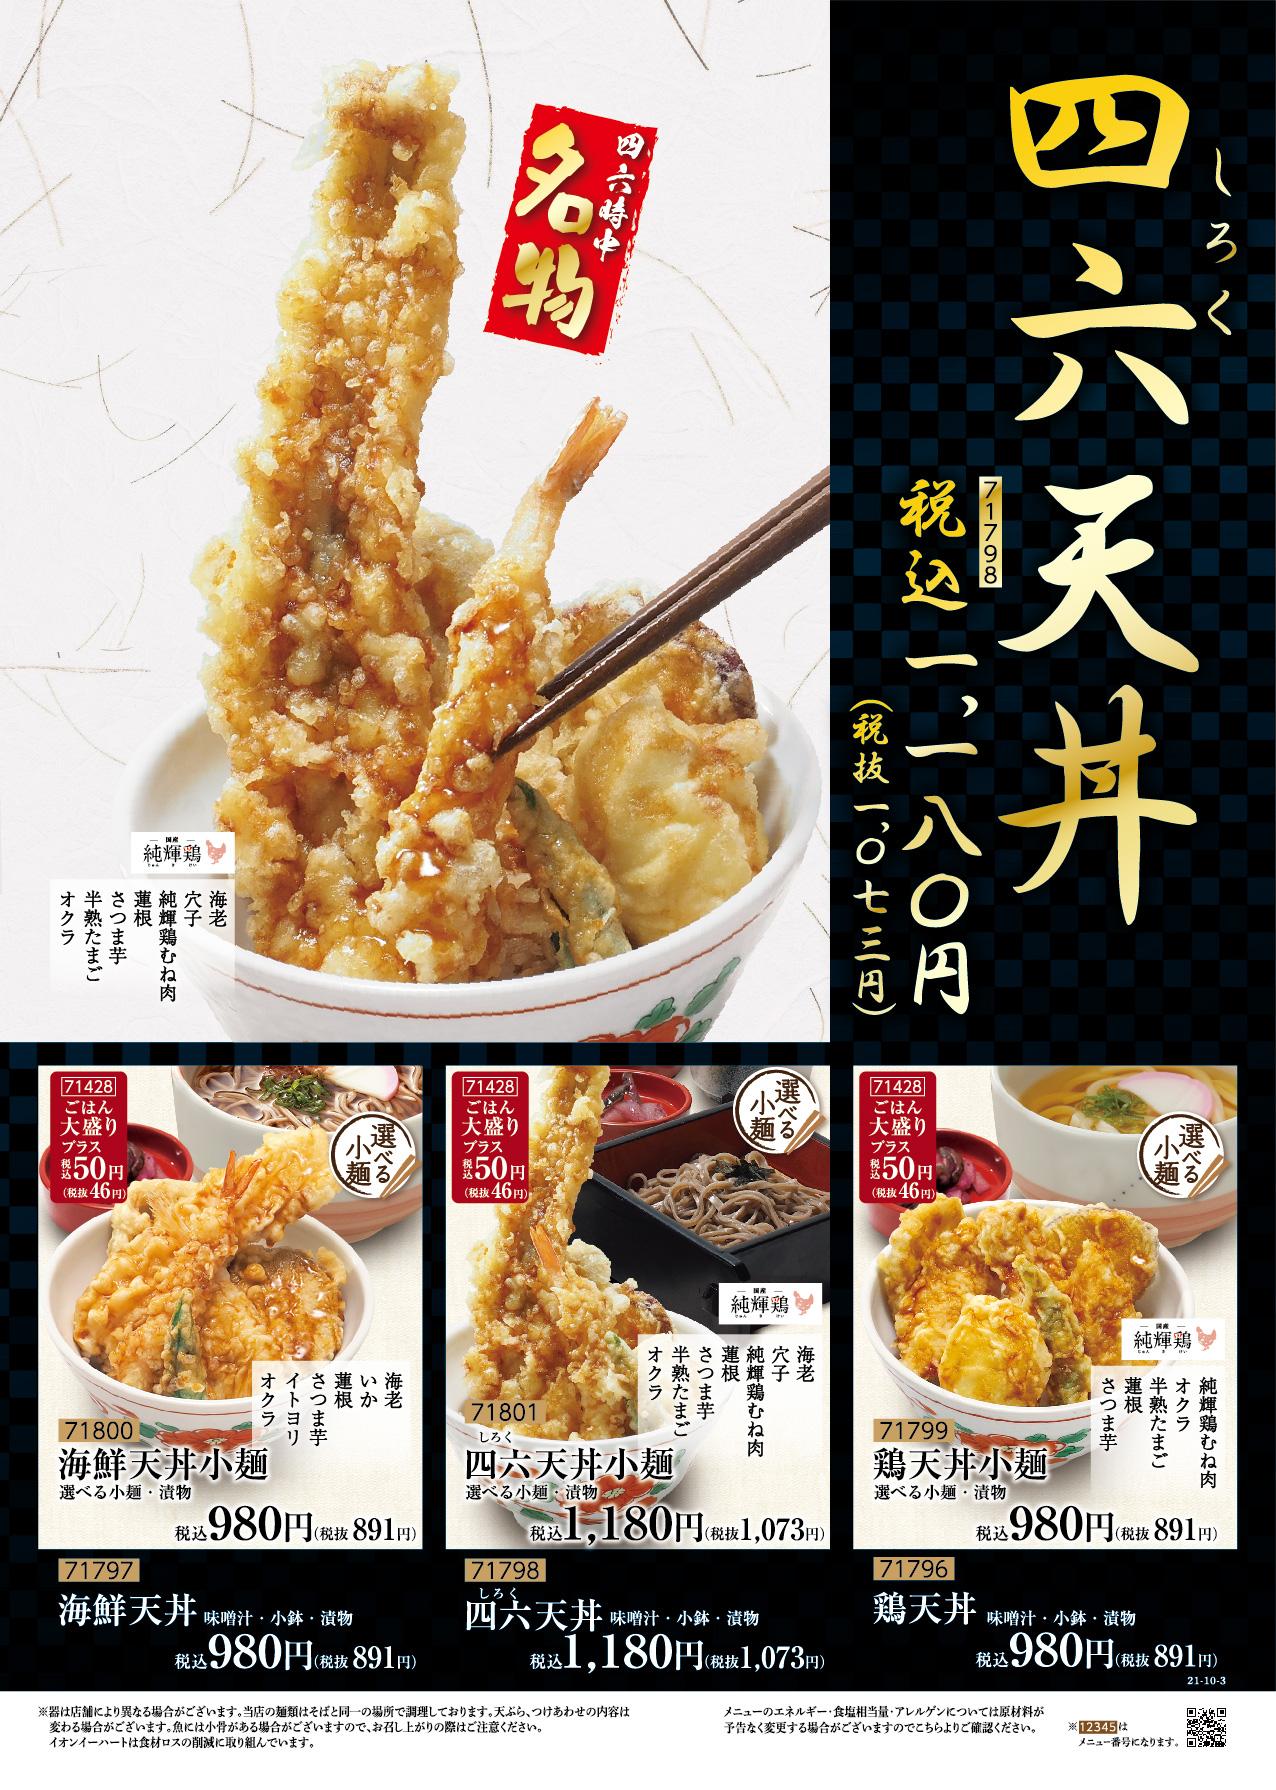 イオングランドメニュー「天ぷらが愉しめる総合和食のお店」タイプ メニュー